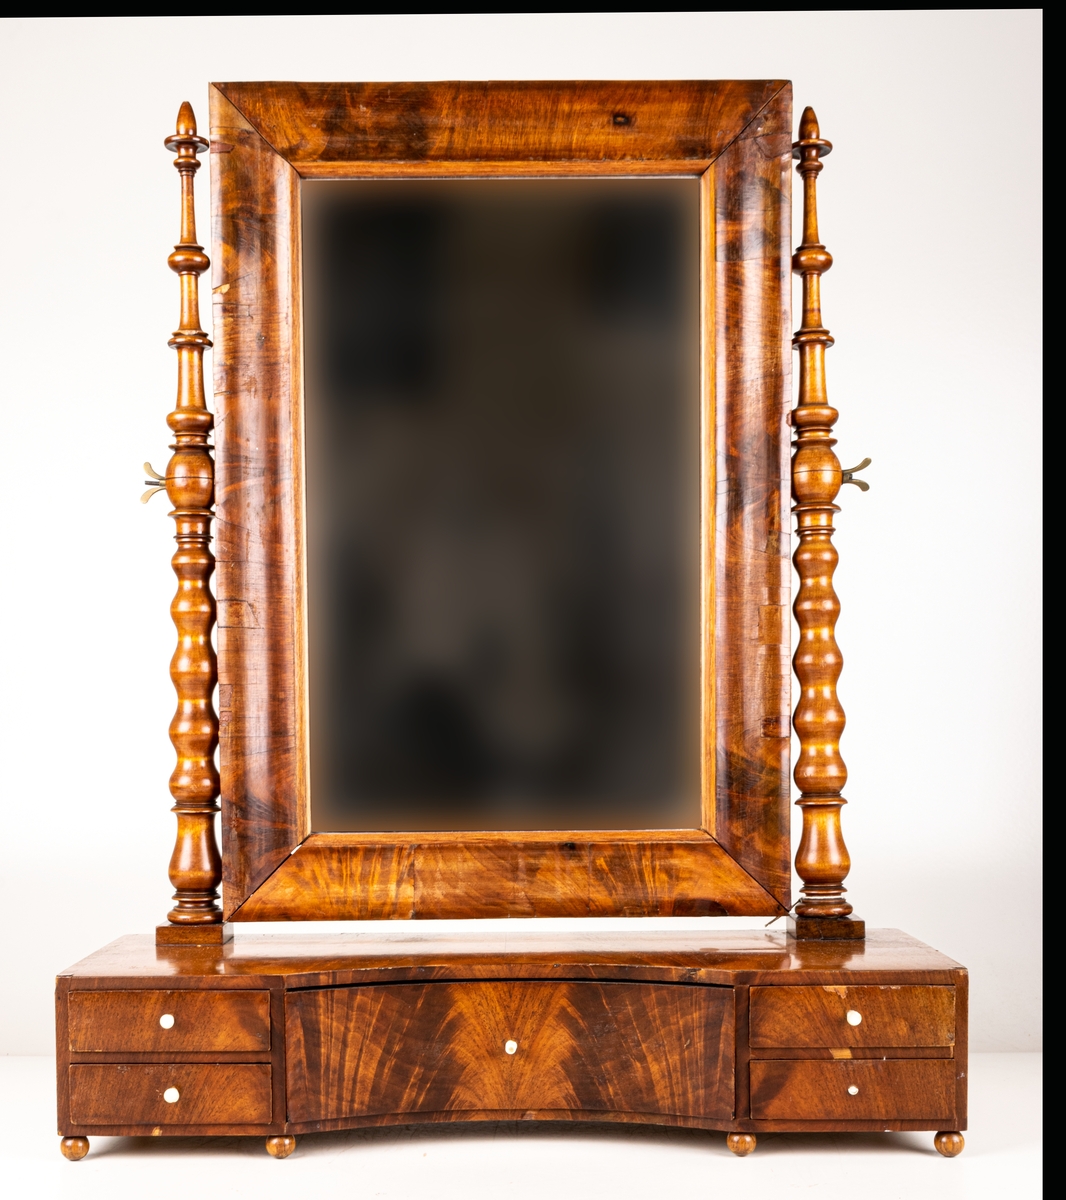 Byråspegel, (lådspegel) av rotmahogny. Med en större och fyra mindre lådor. Svarvade ståndare för spegelns upphängning.